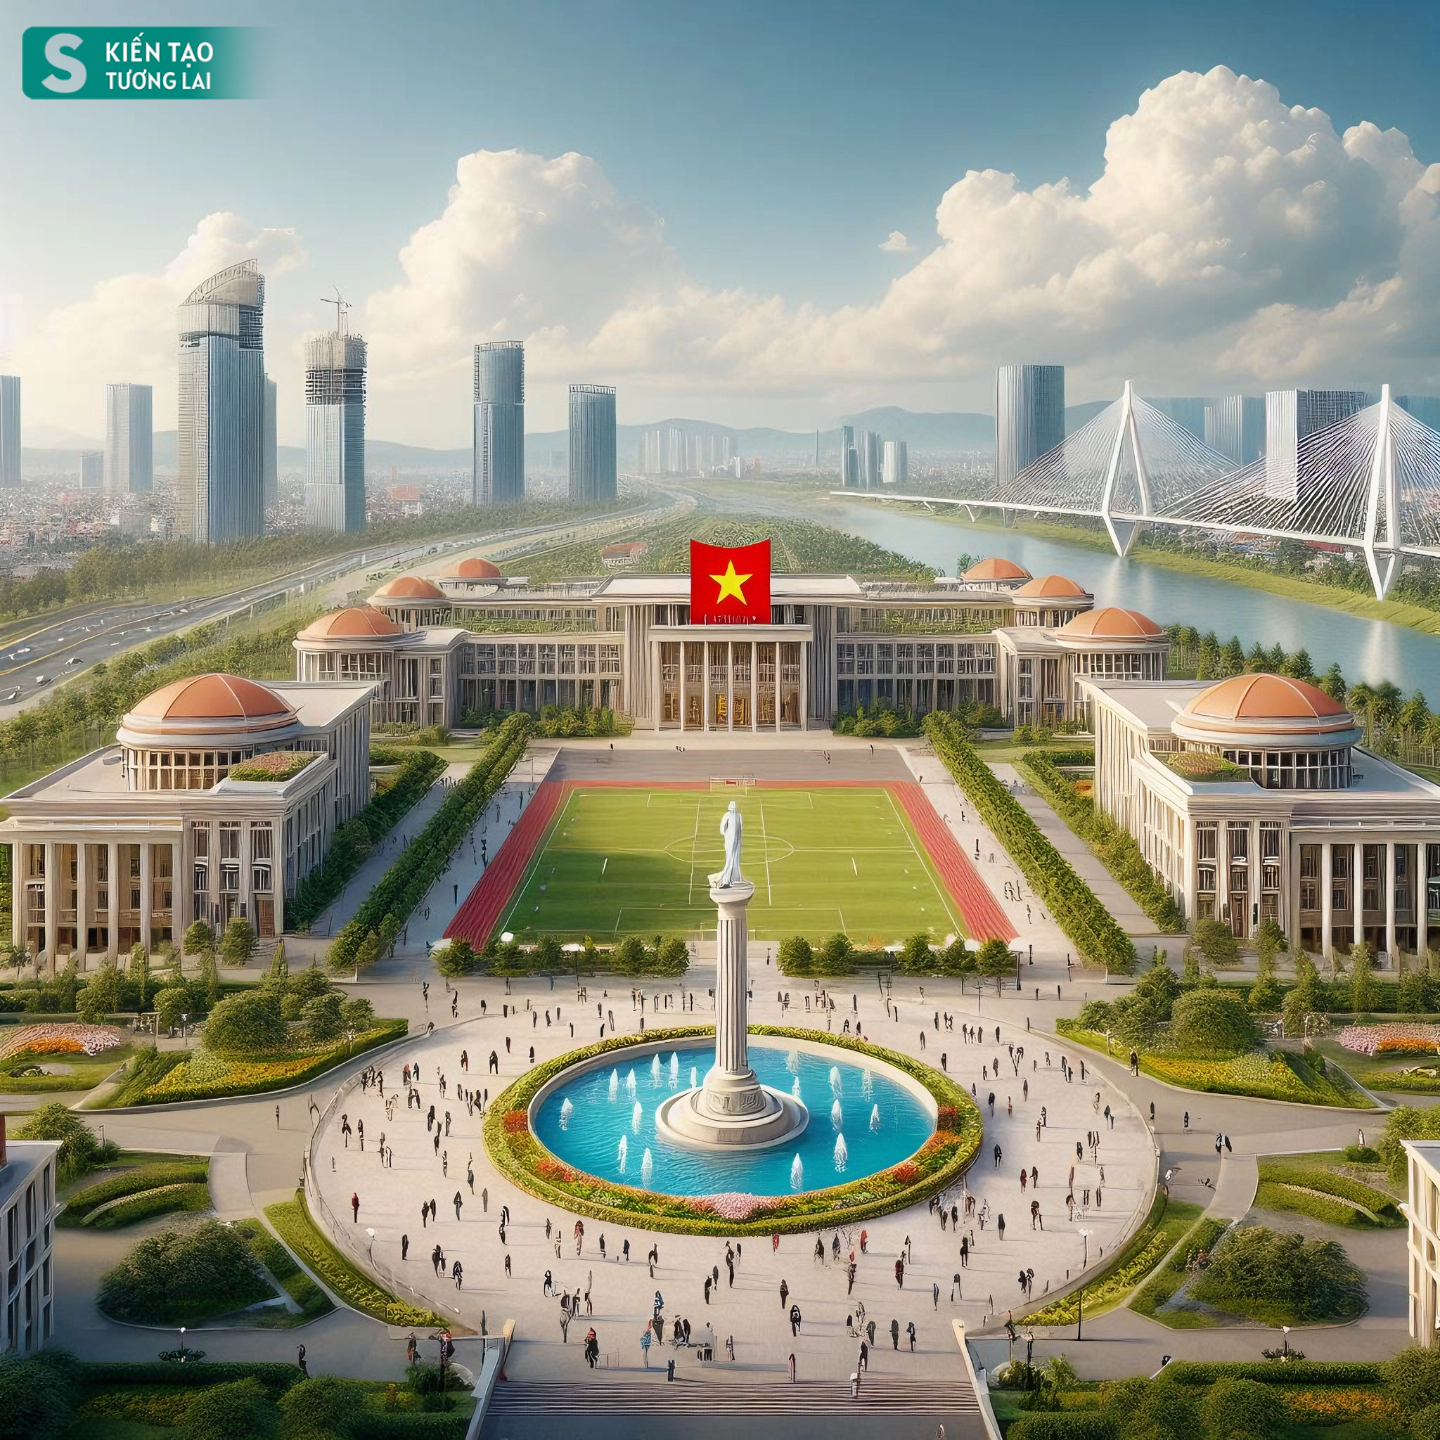 Hình ảnh trong mơ về vùng kinh tế lớn nhất Việt Nam, sở hữu cả 